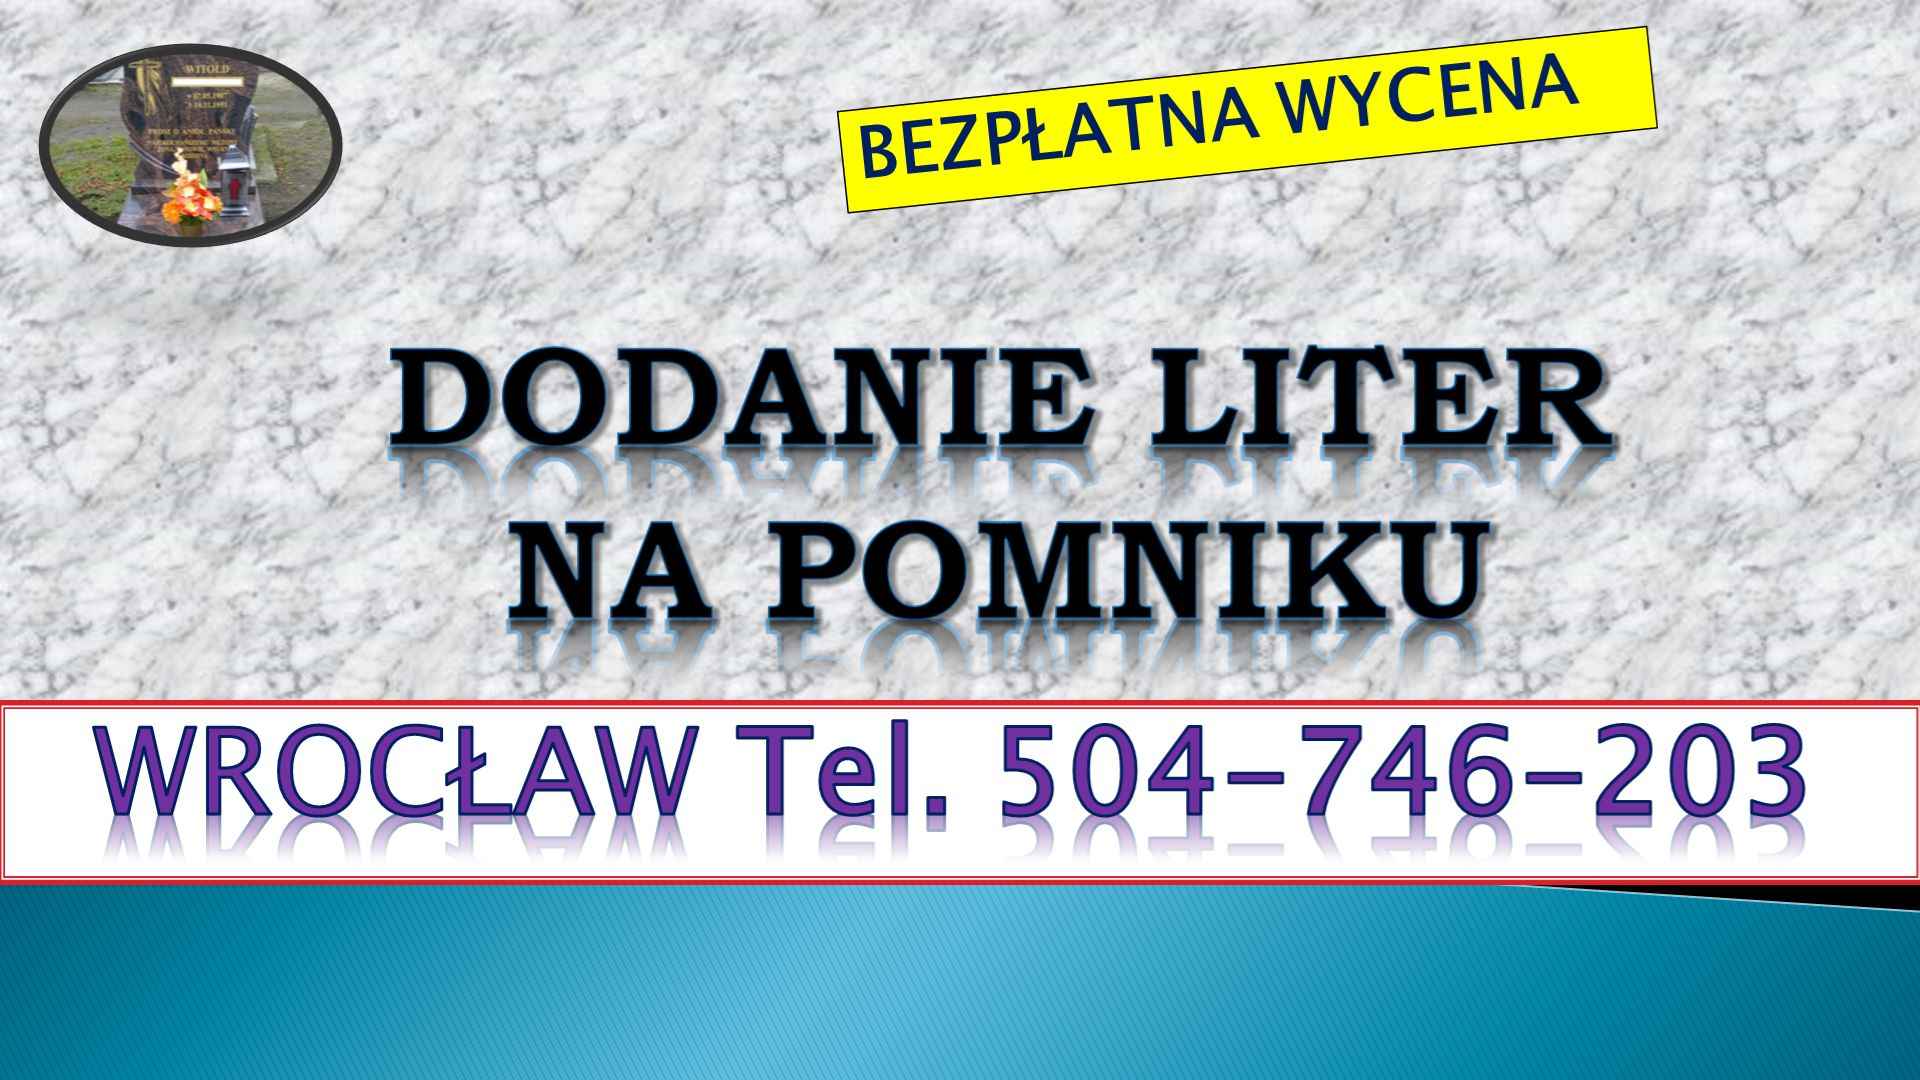 Dopisanie liter na pomniku, tel. 504-746-203, Wrocław, dodanie napisów Psie Pole - zdjęcie 4